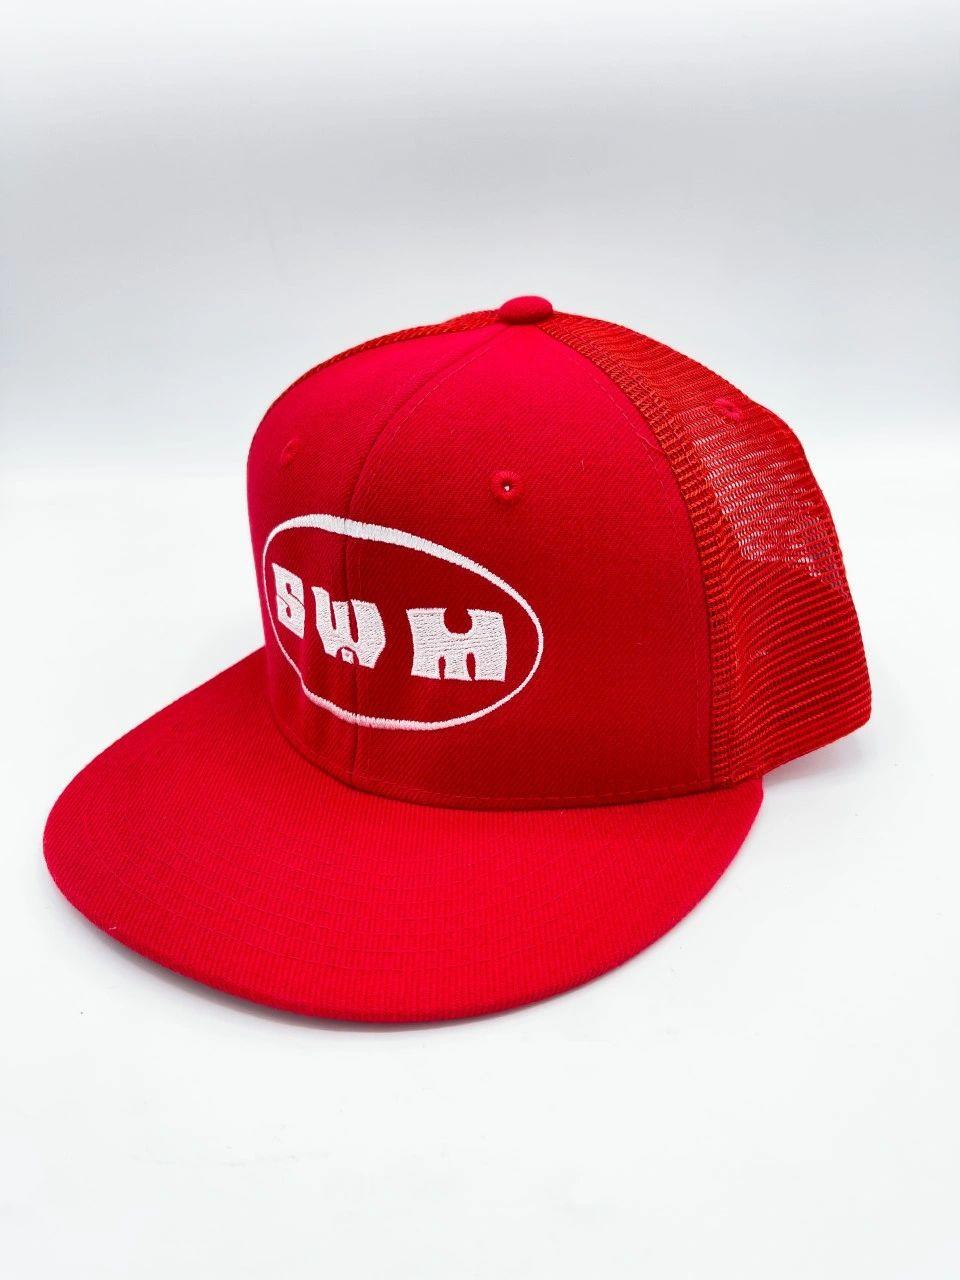 SWM Trucker Hat - Red